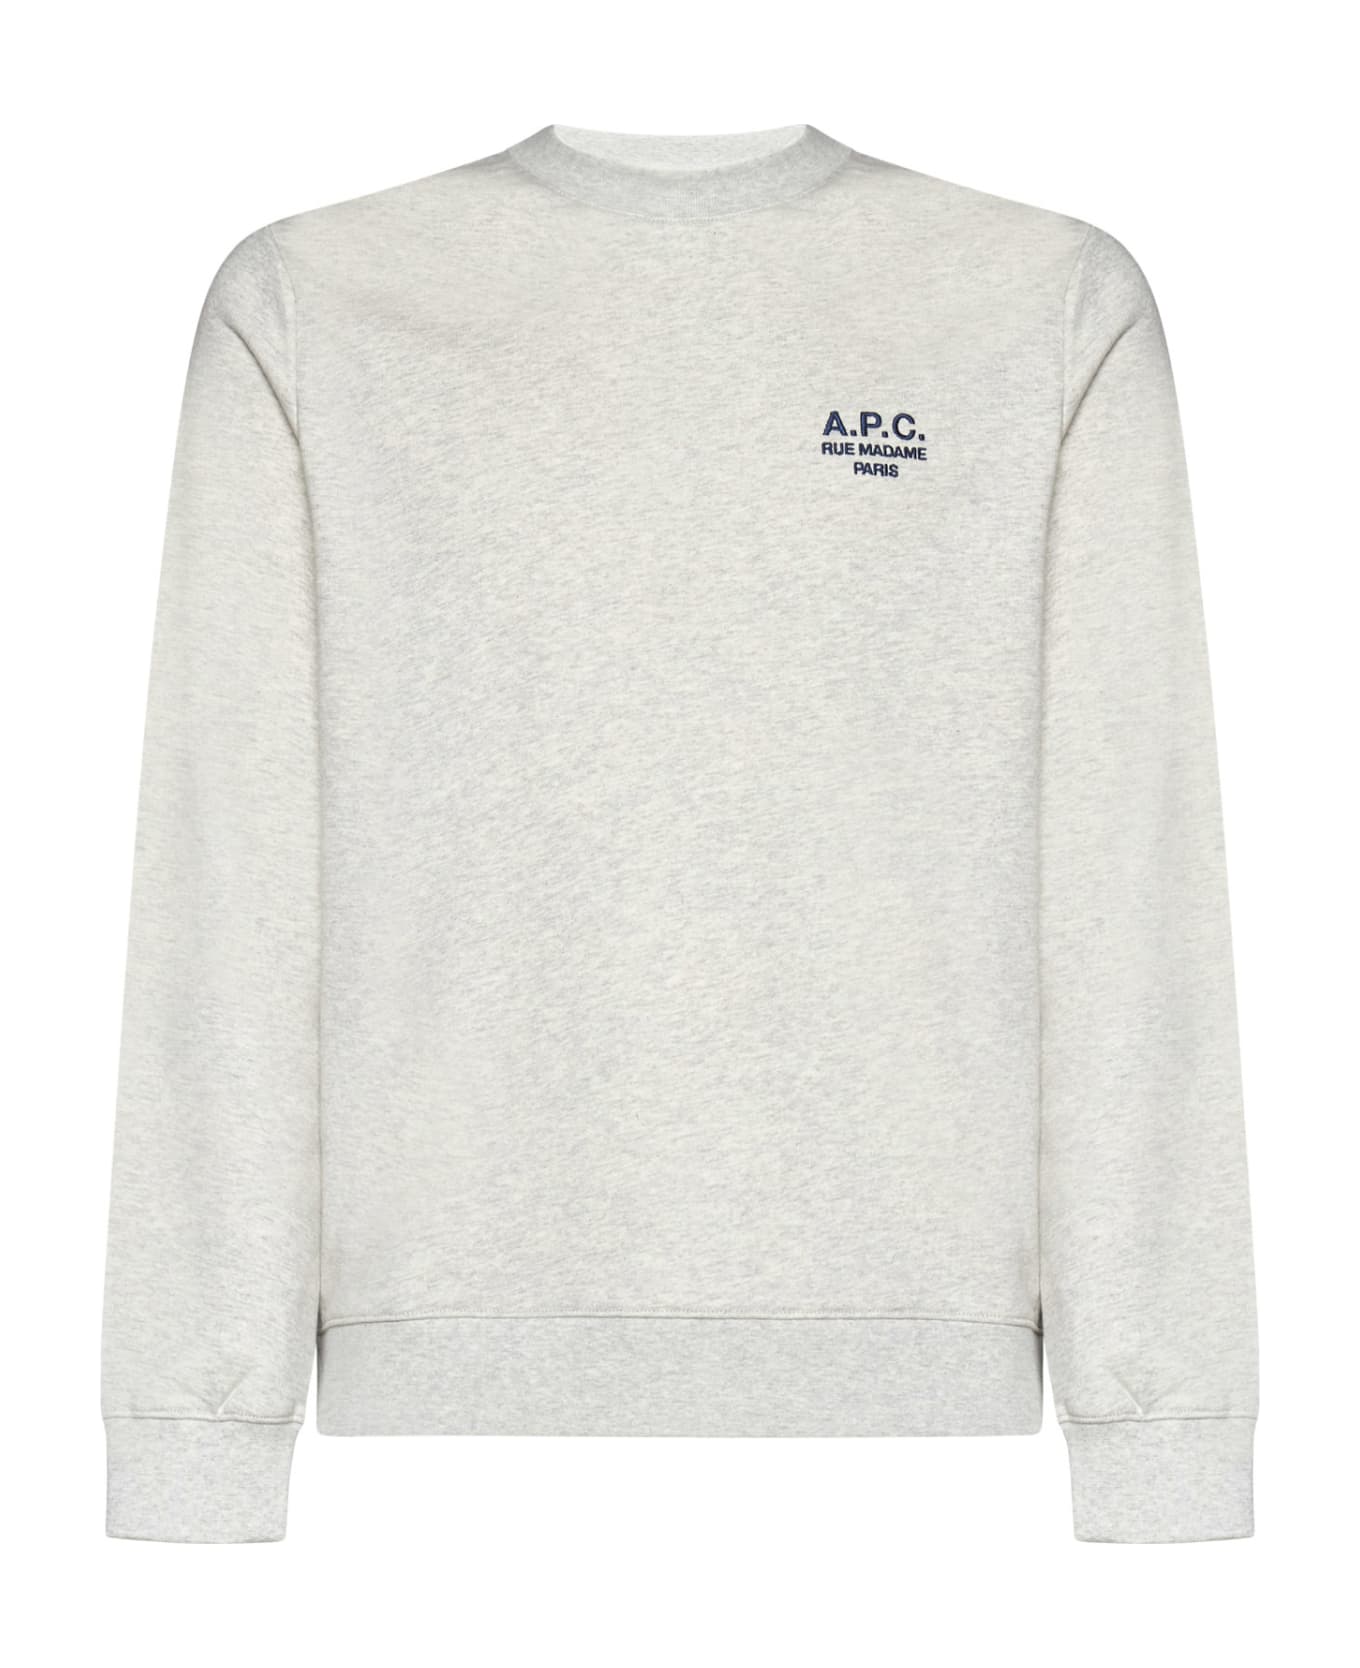 A.P.C. Rider Sweatshirt - Grey フリース